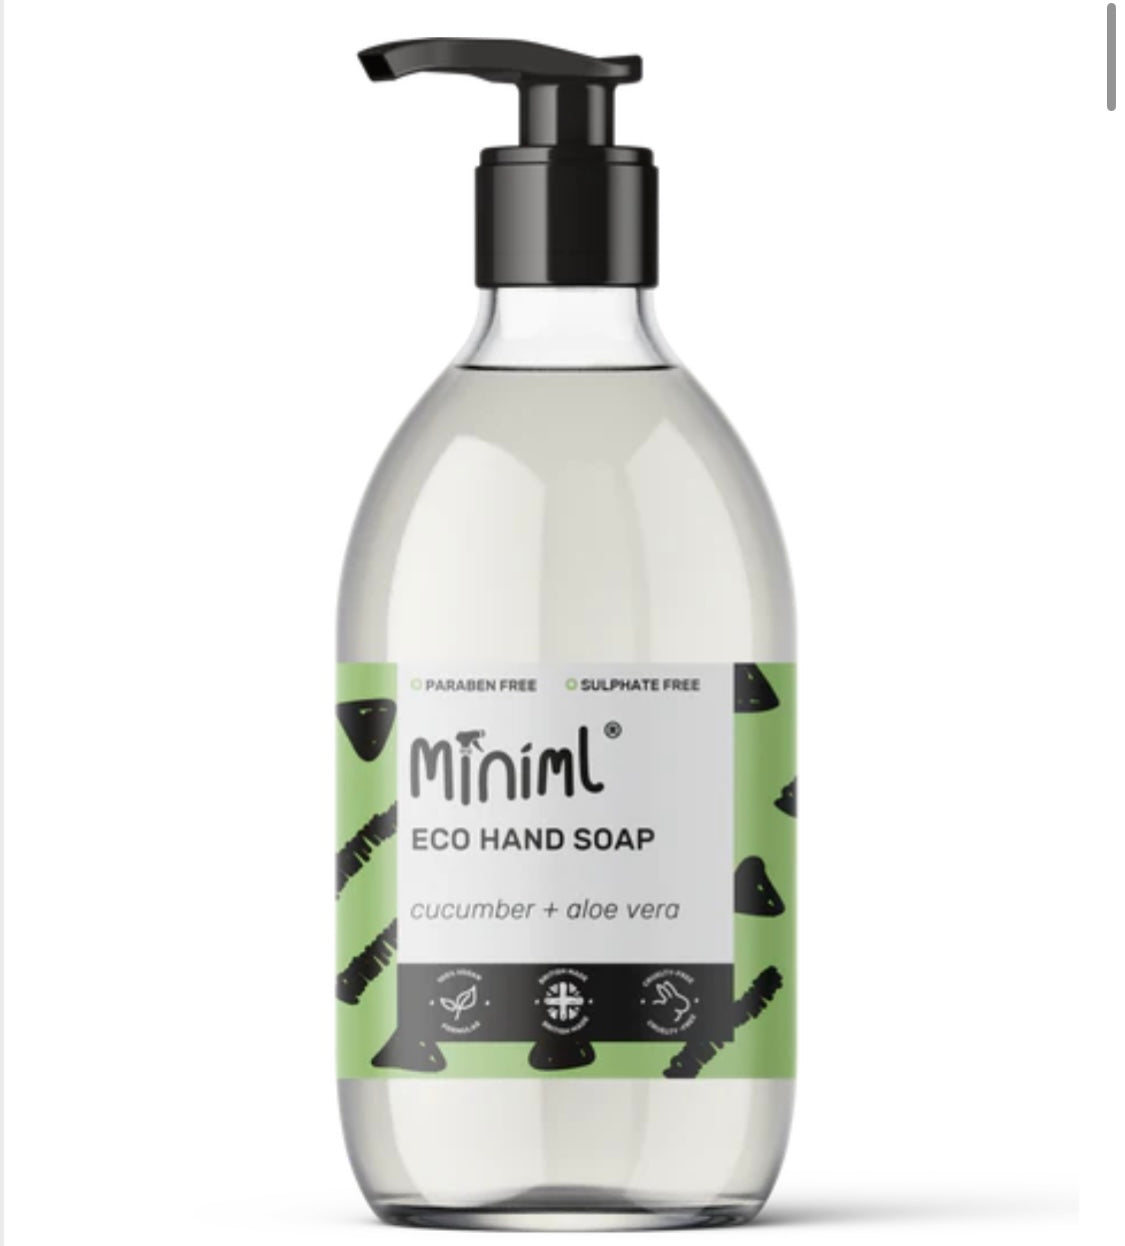 READY FILLED Hand Soap in Glass bottle 500ml by Miniml